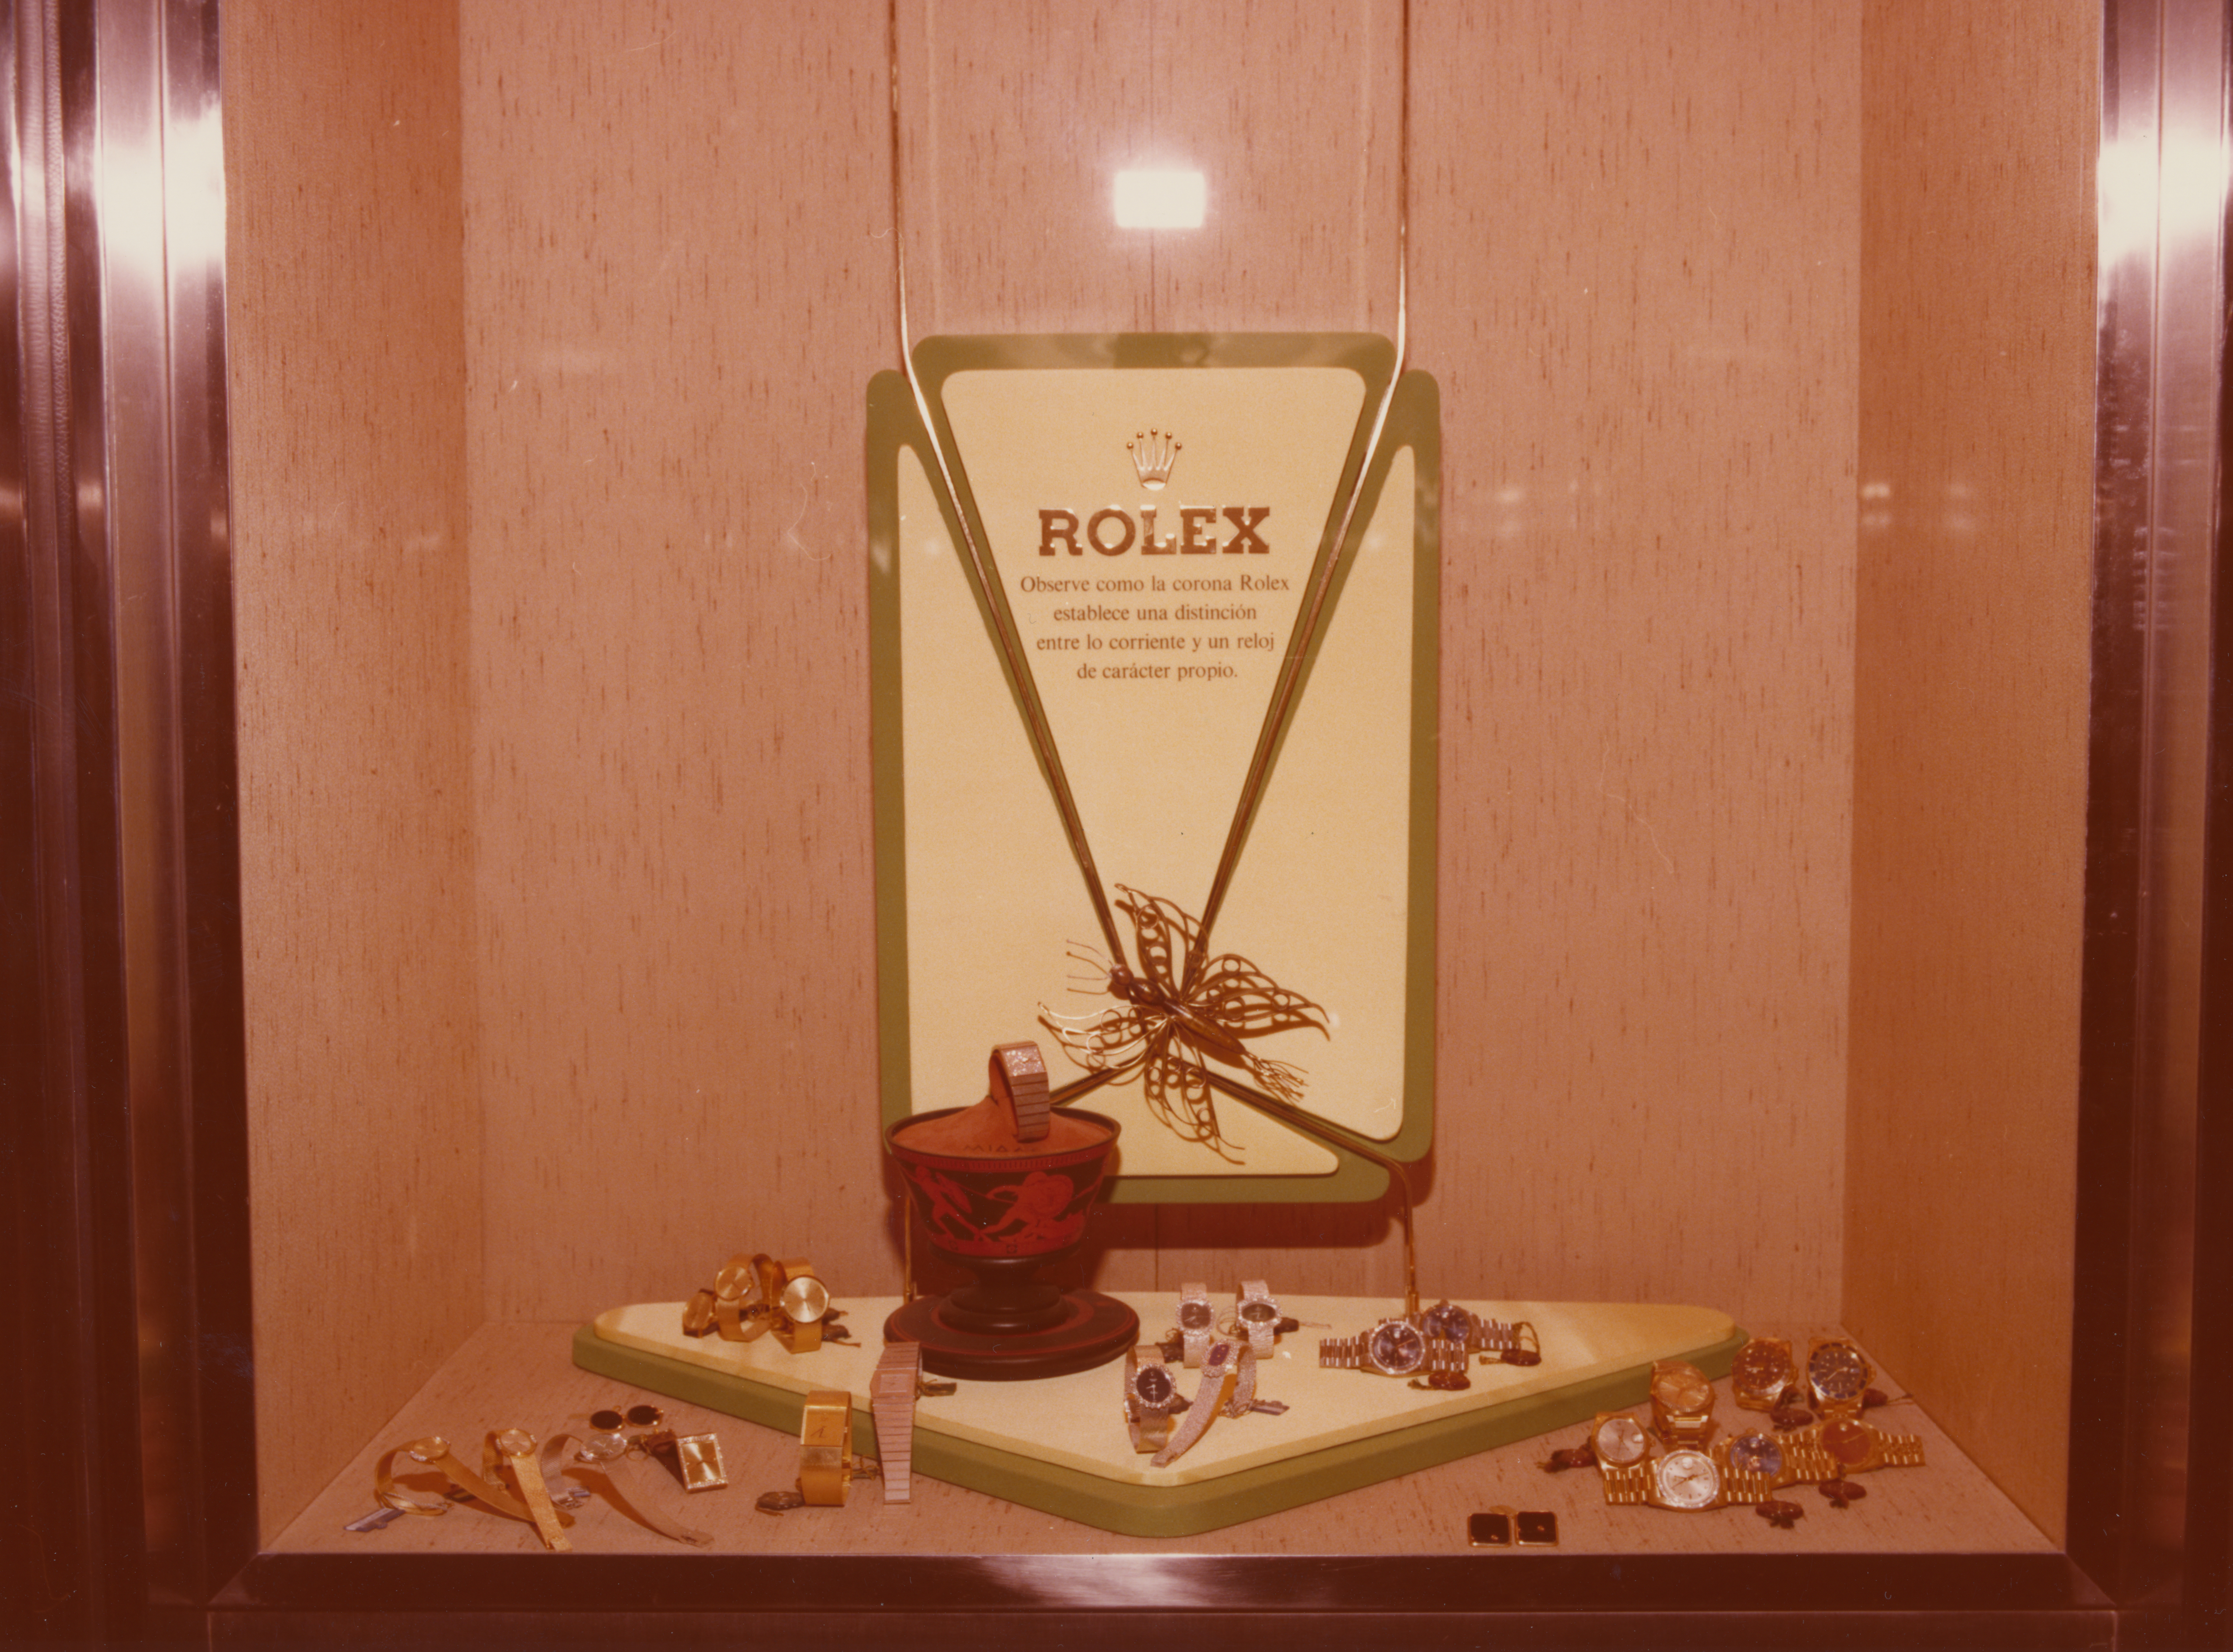 Primera exposición Rolex